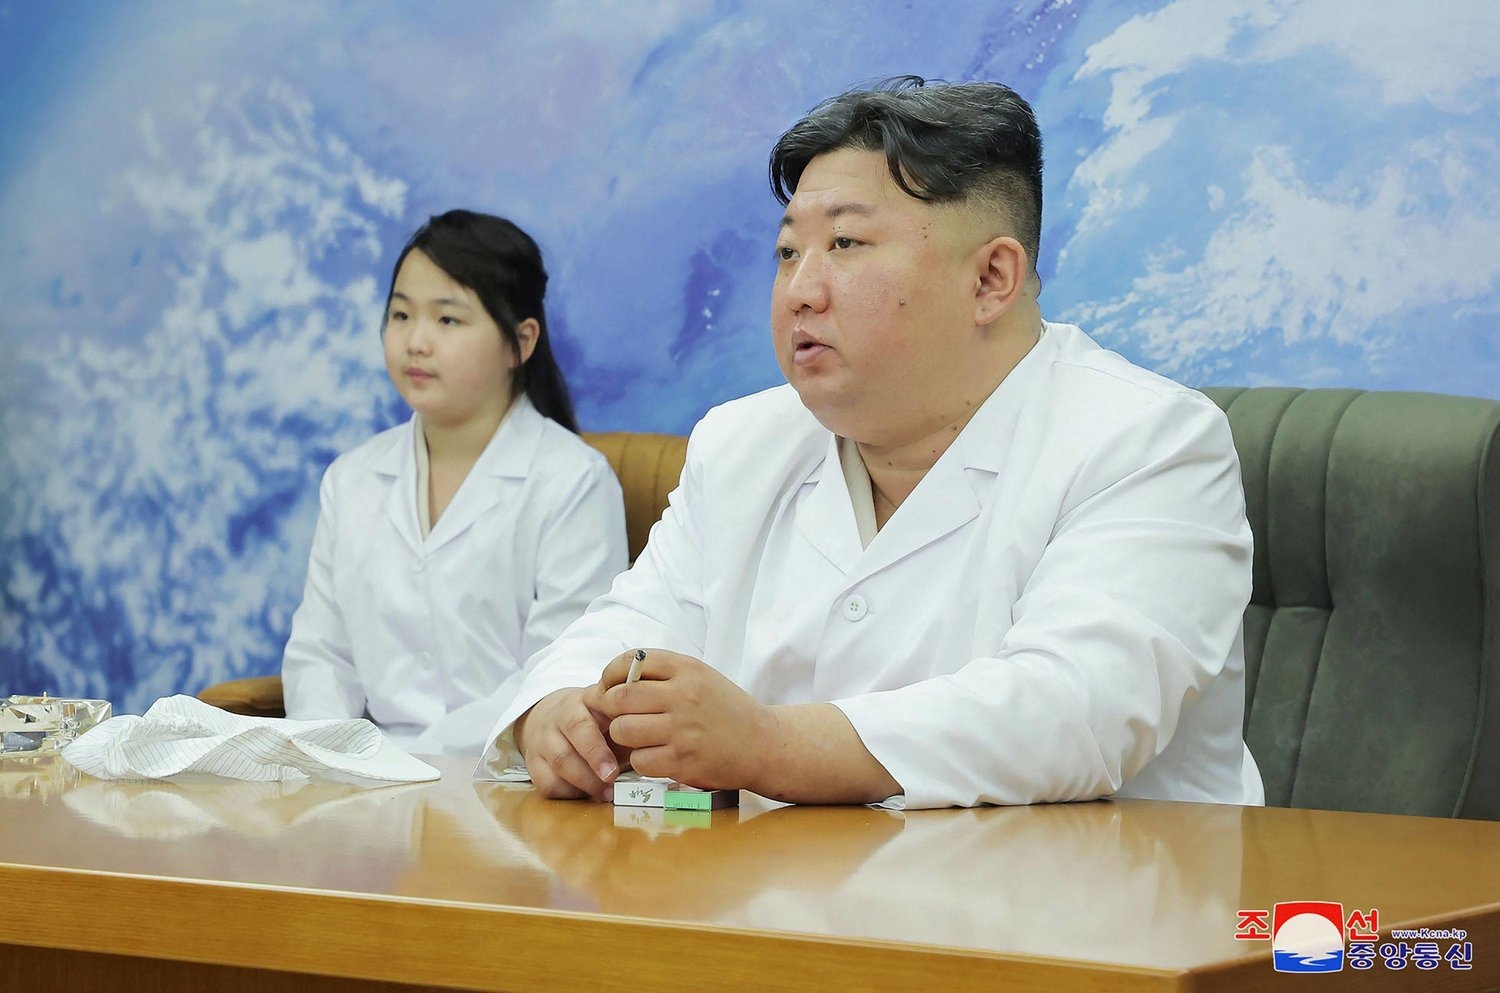 زعيم كوريا الشمالية يتفقد محطة للأقمار الصناعية العسكرية